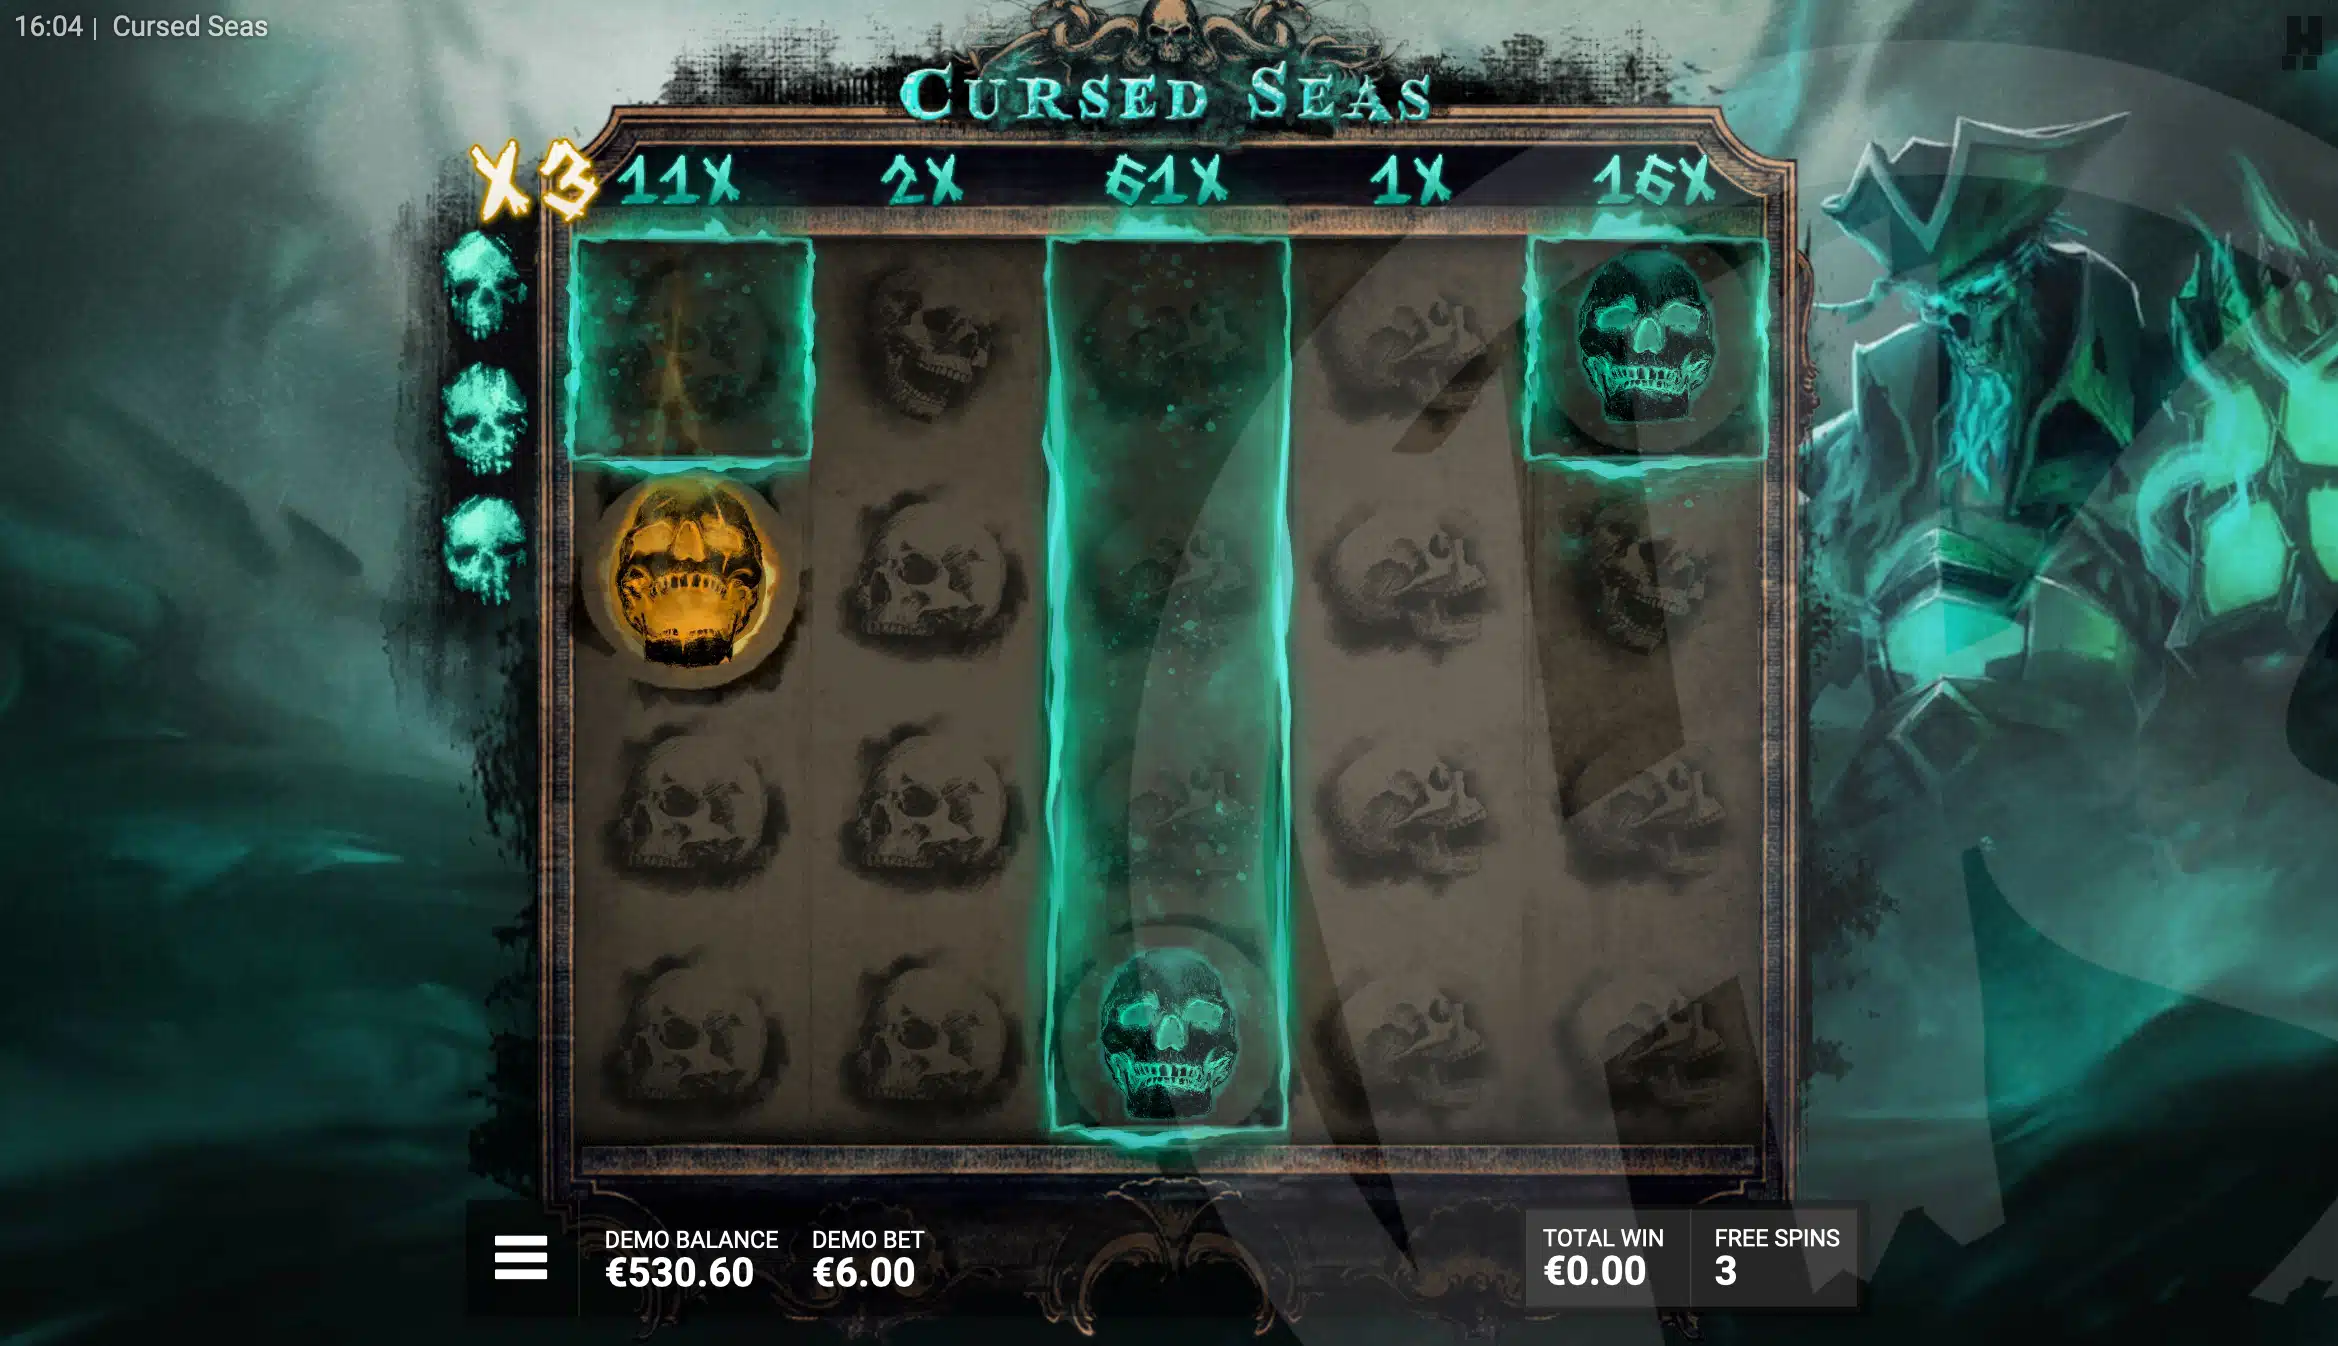 Lives Reset Each Time Skull or Kraken Symbols Land During the Dead Men Tell No Tales Bonus Game